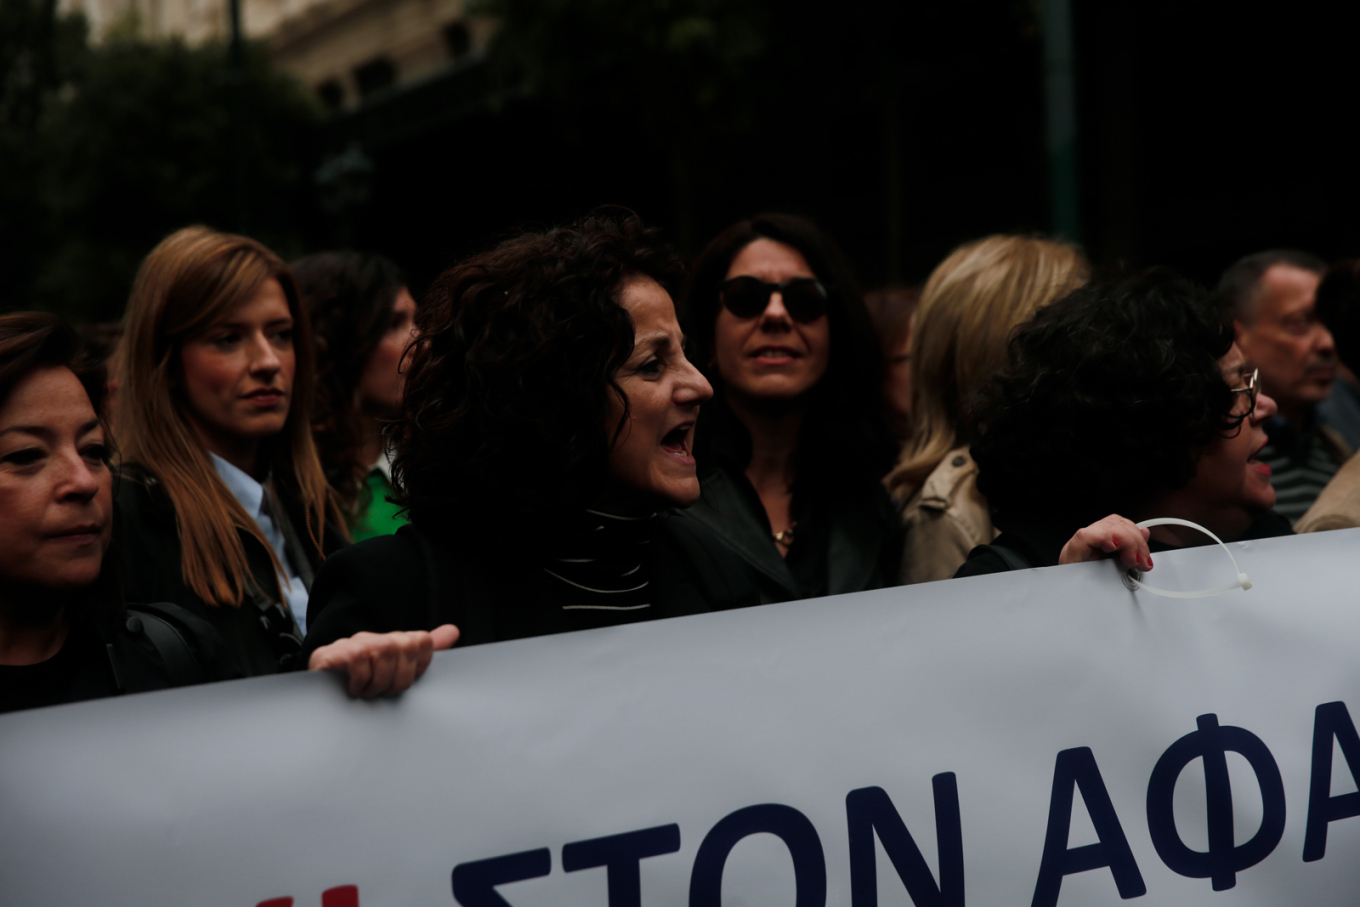 Μεγάλη συγκέντρωση ελεύθερων επαγγελματιών στην Αθήνα κατά των νέων φορολογικών μέτρων